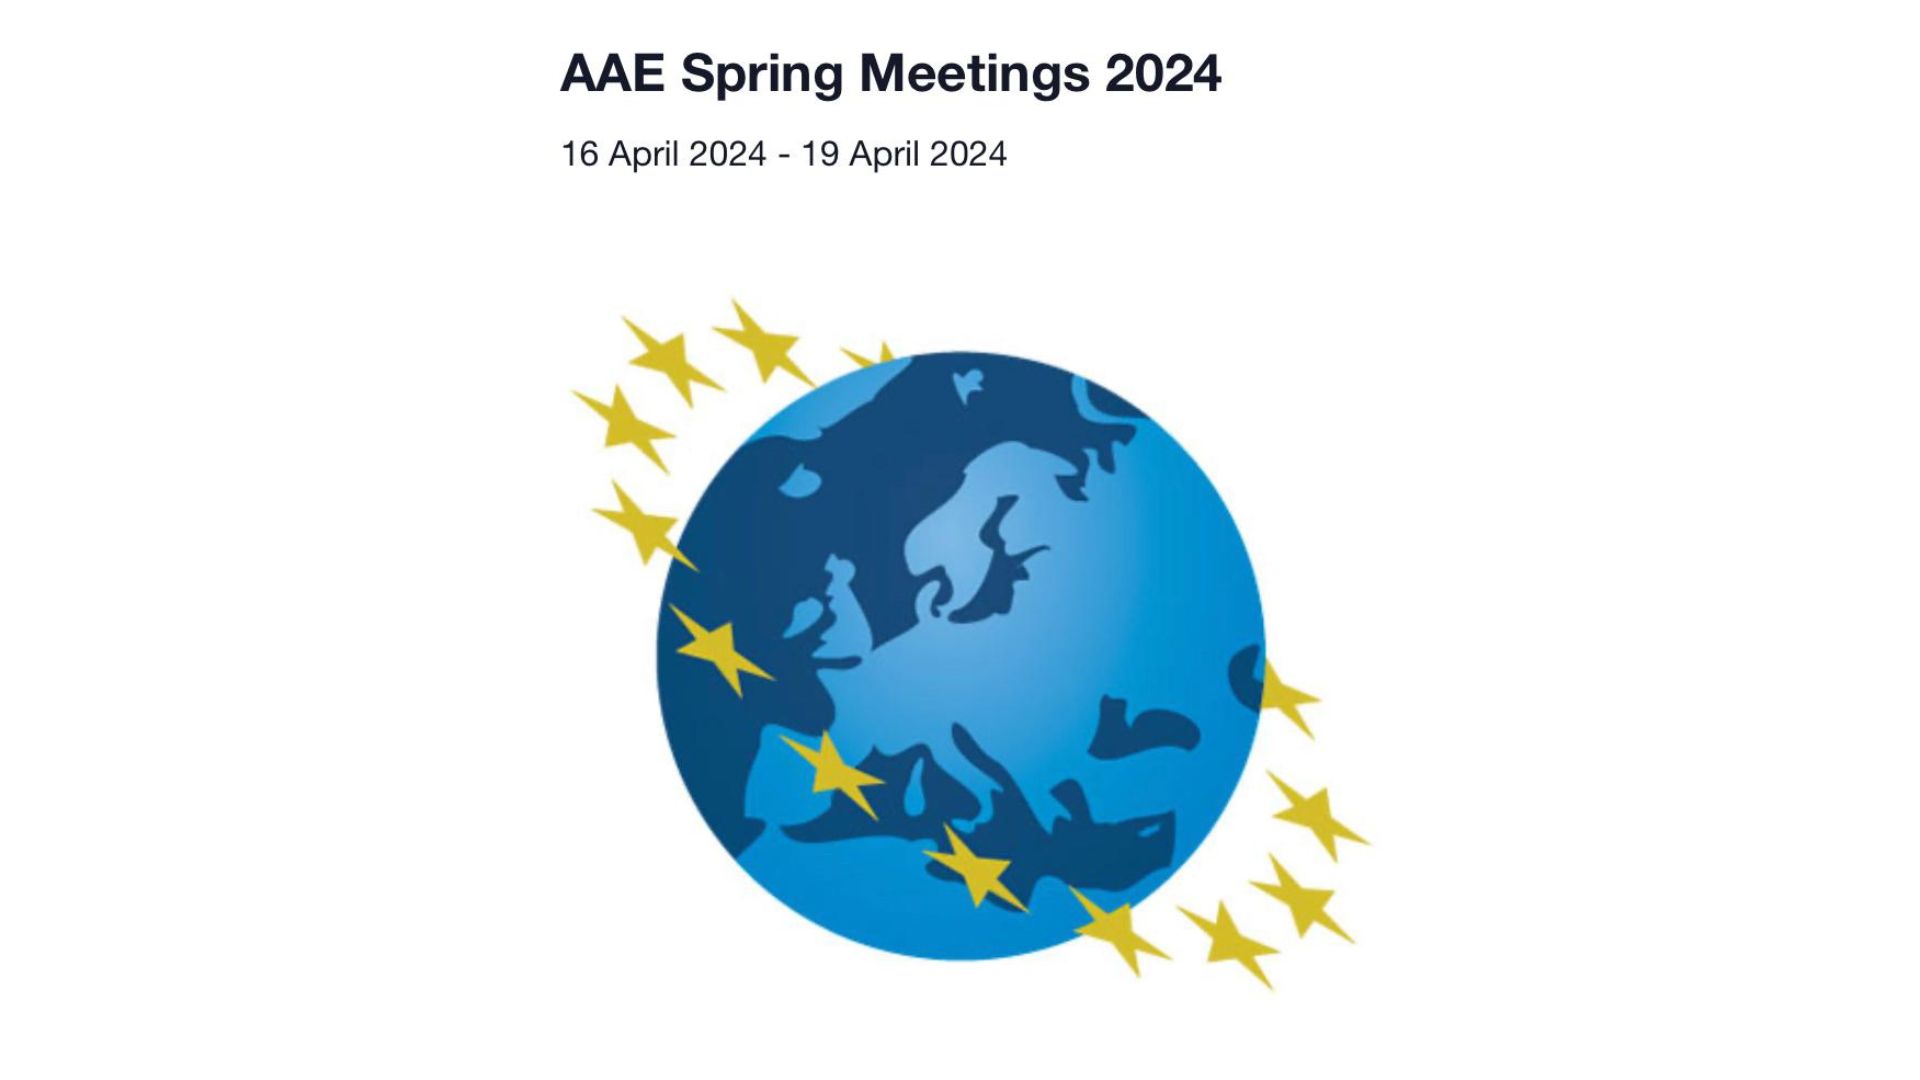 Presencia del Observatorio de los Sistemas Europeos de Previsión Social Complementaria en los AAE Spring Meetings 2024